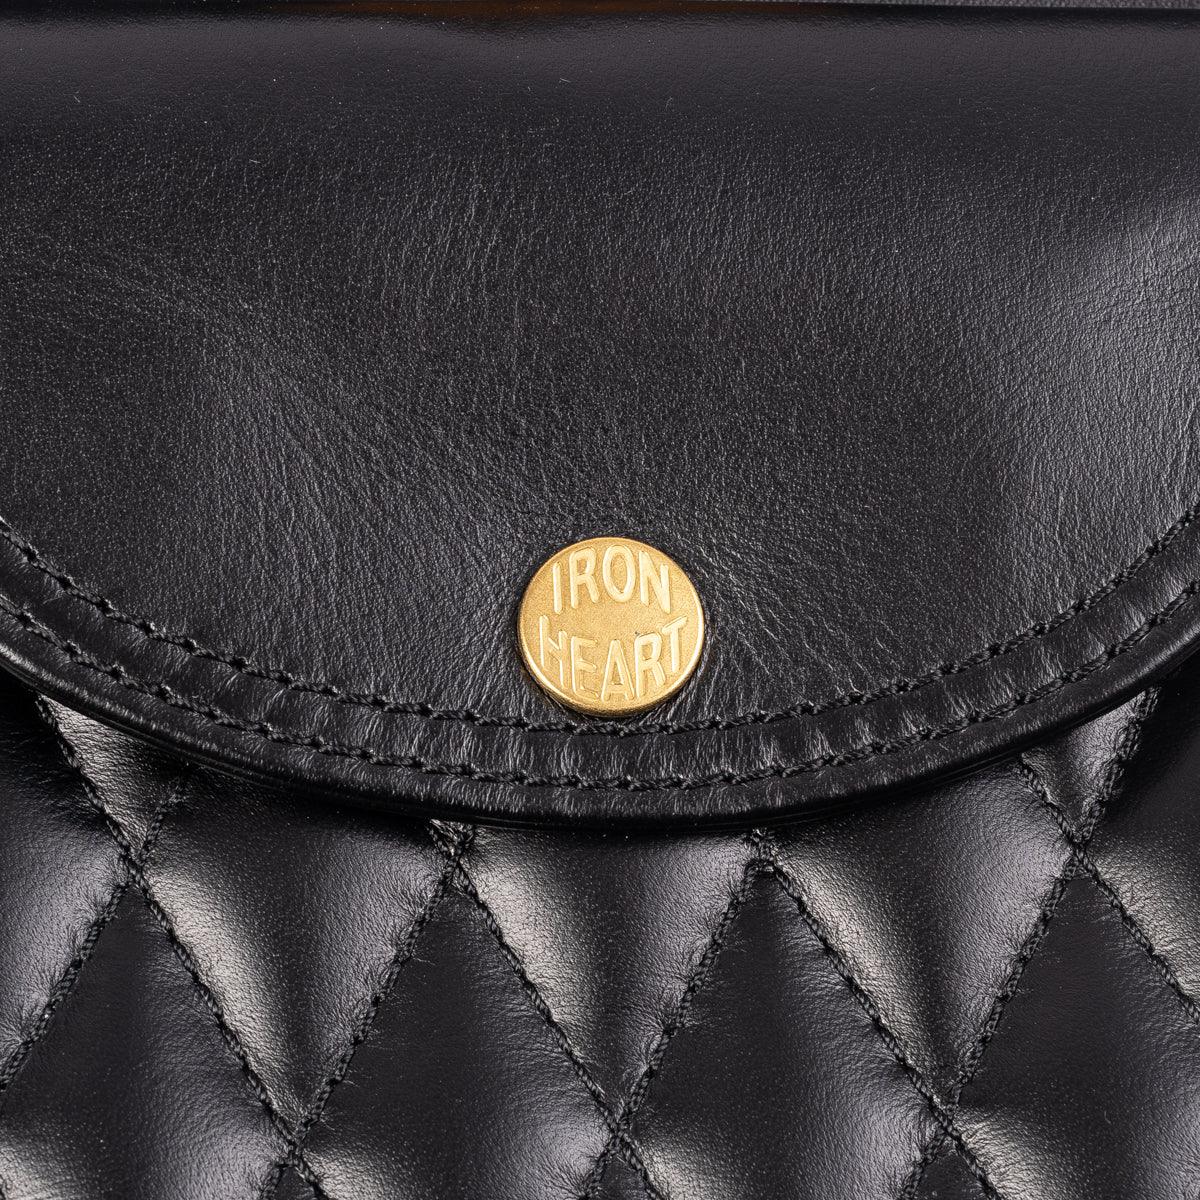 IHE-40-BLK - Rectangular Leather Diamond Stitched Shoulder Bag Black